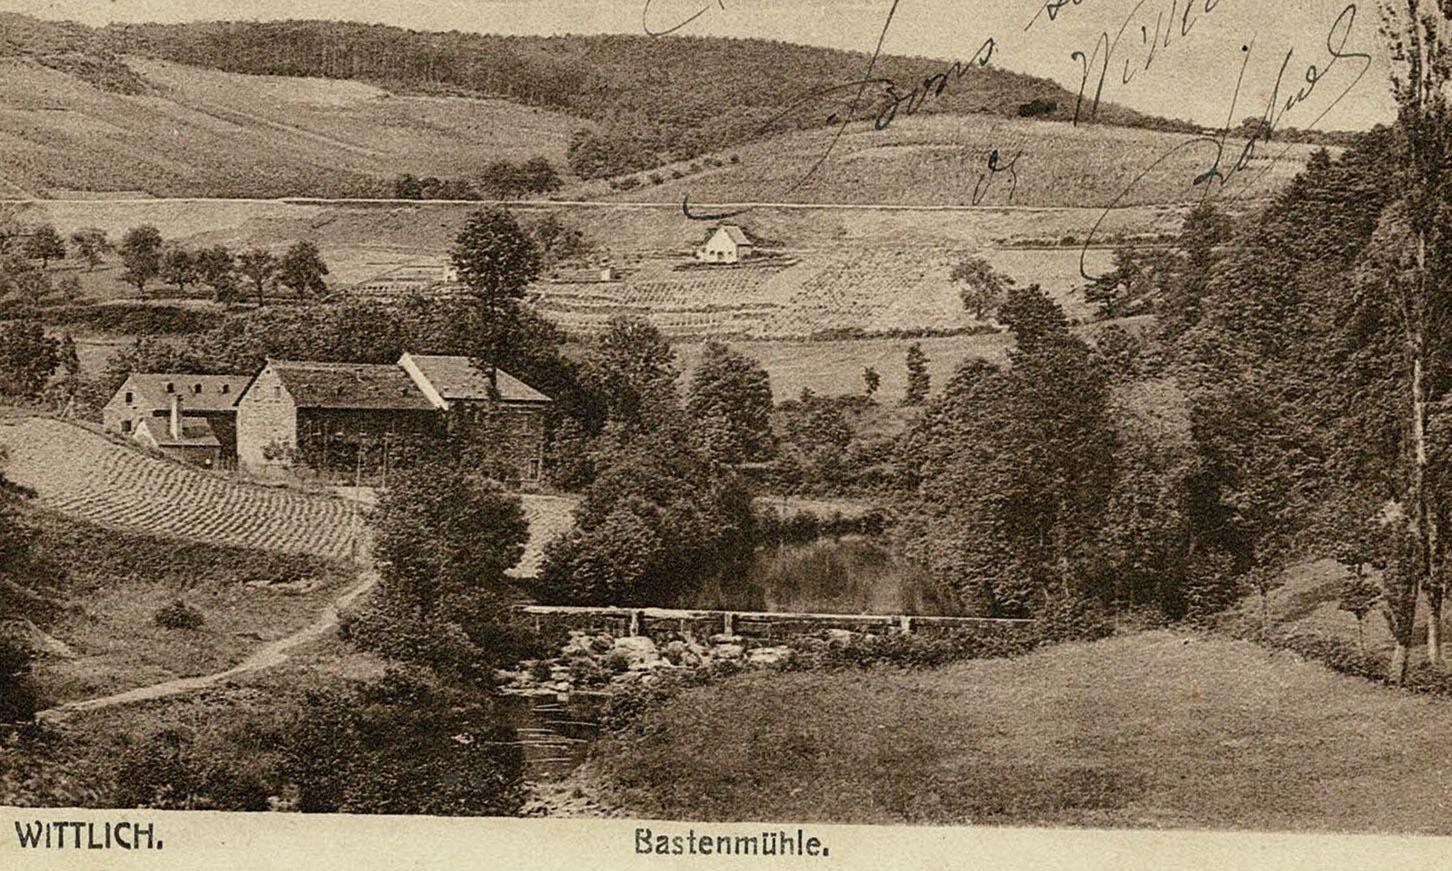 Bastenmühle